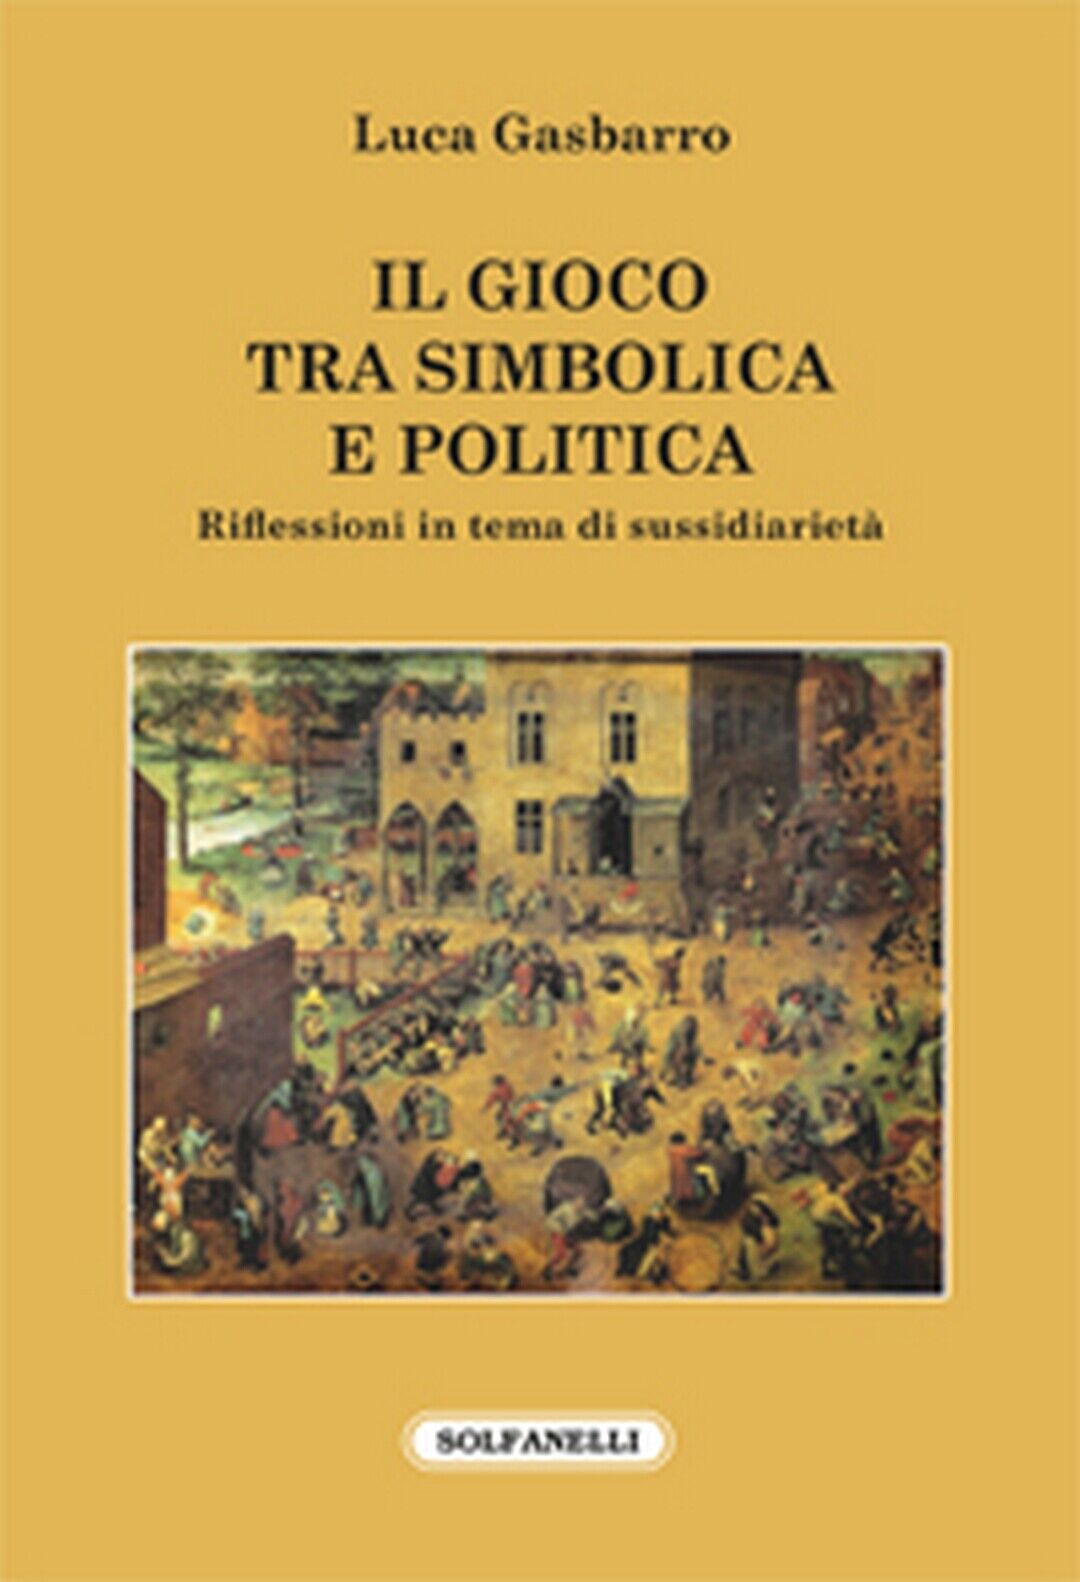 IL GIOCO TRA SIMBOLICA E POLITICA  di Luca Gasbarro,  Solfanelli Edizioni